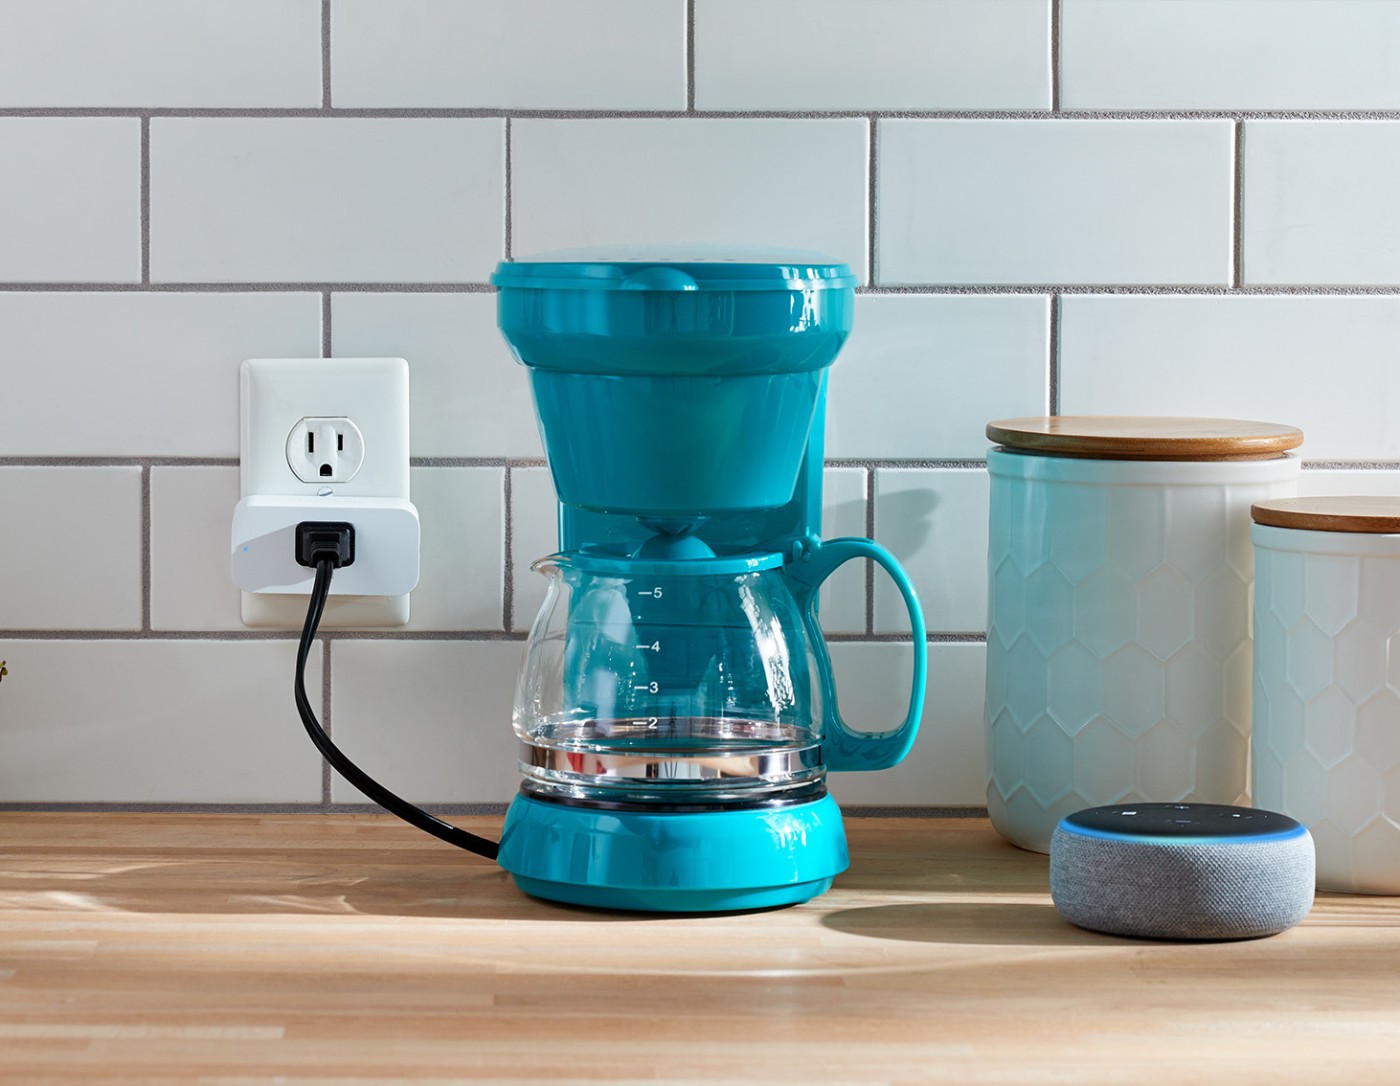 Cafetera enchufada al Amazon Smart Plug en la encimera de la cocina.